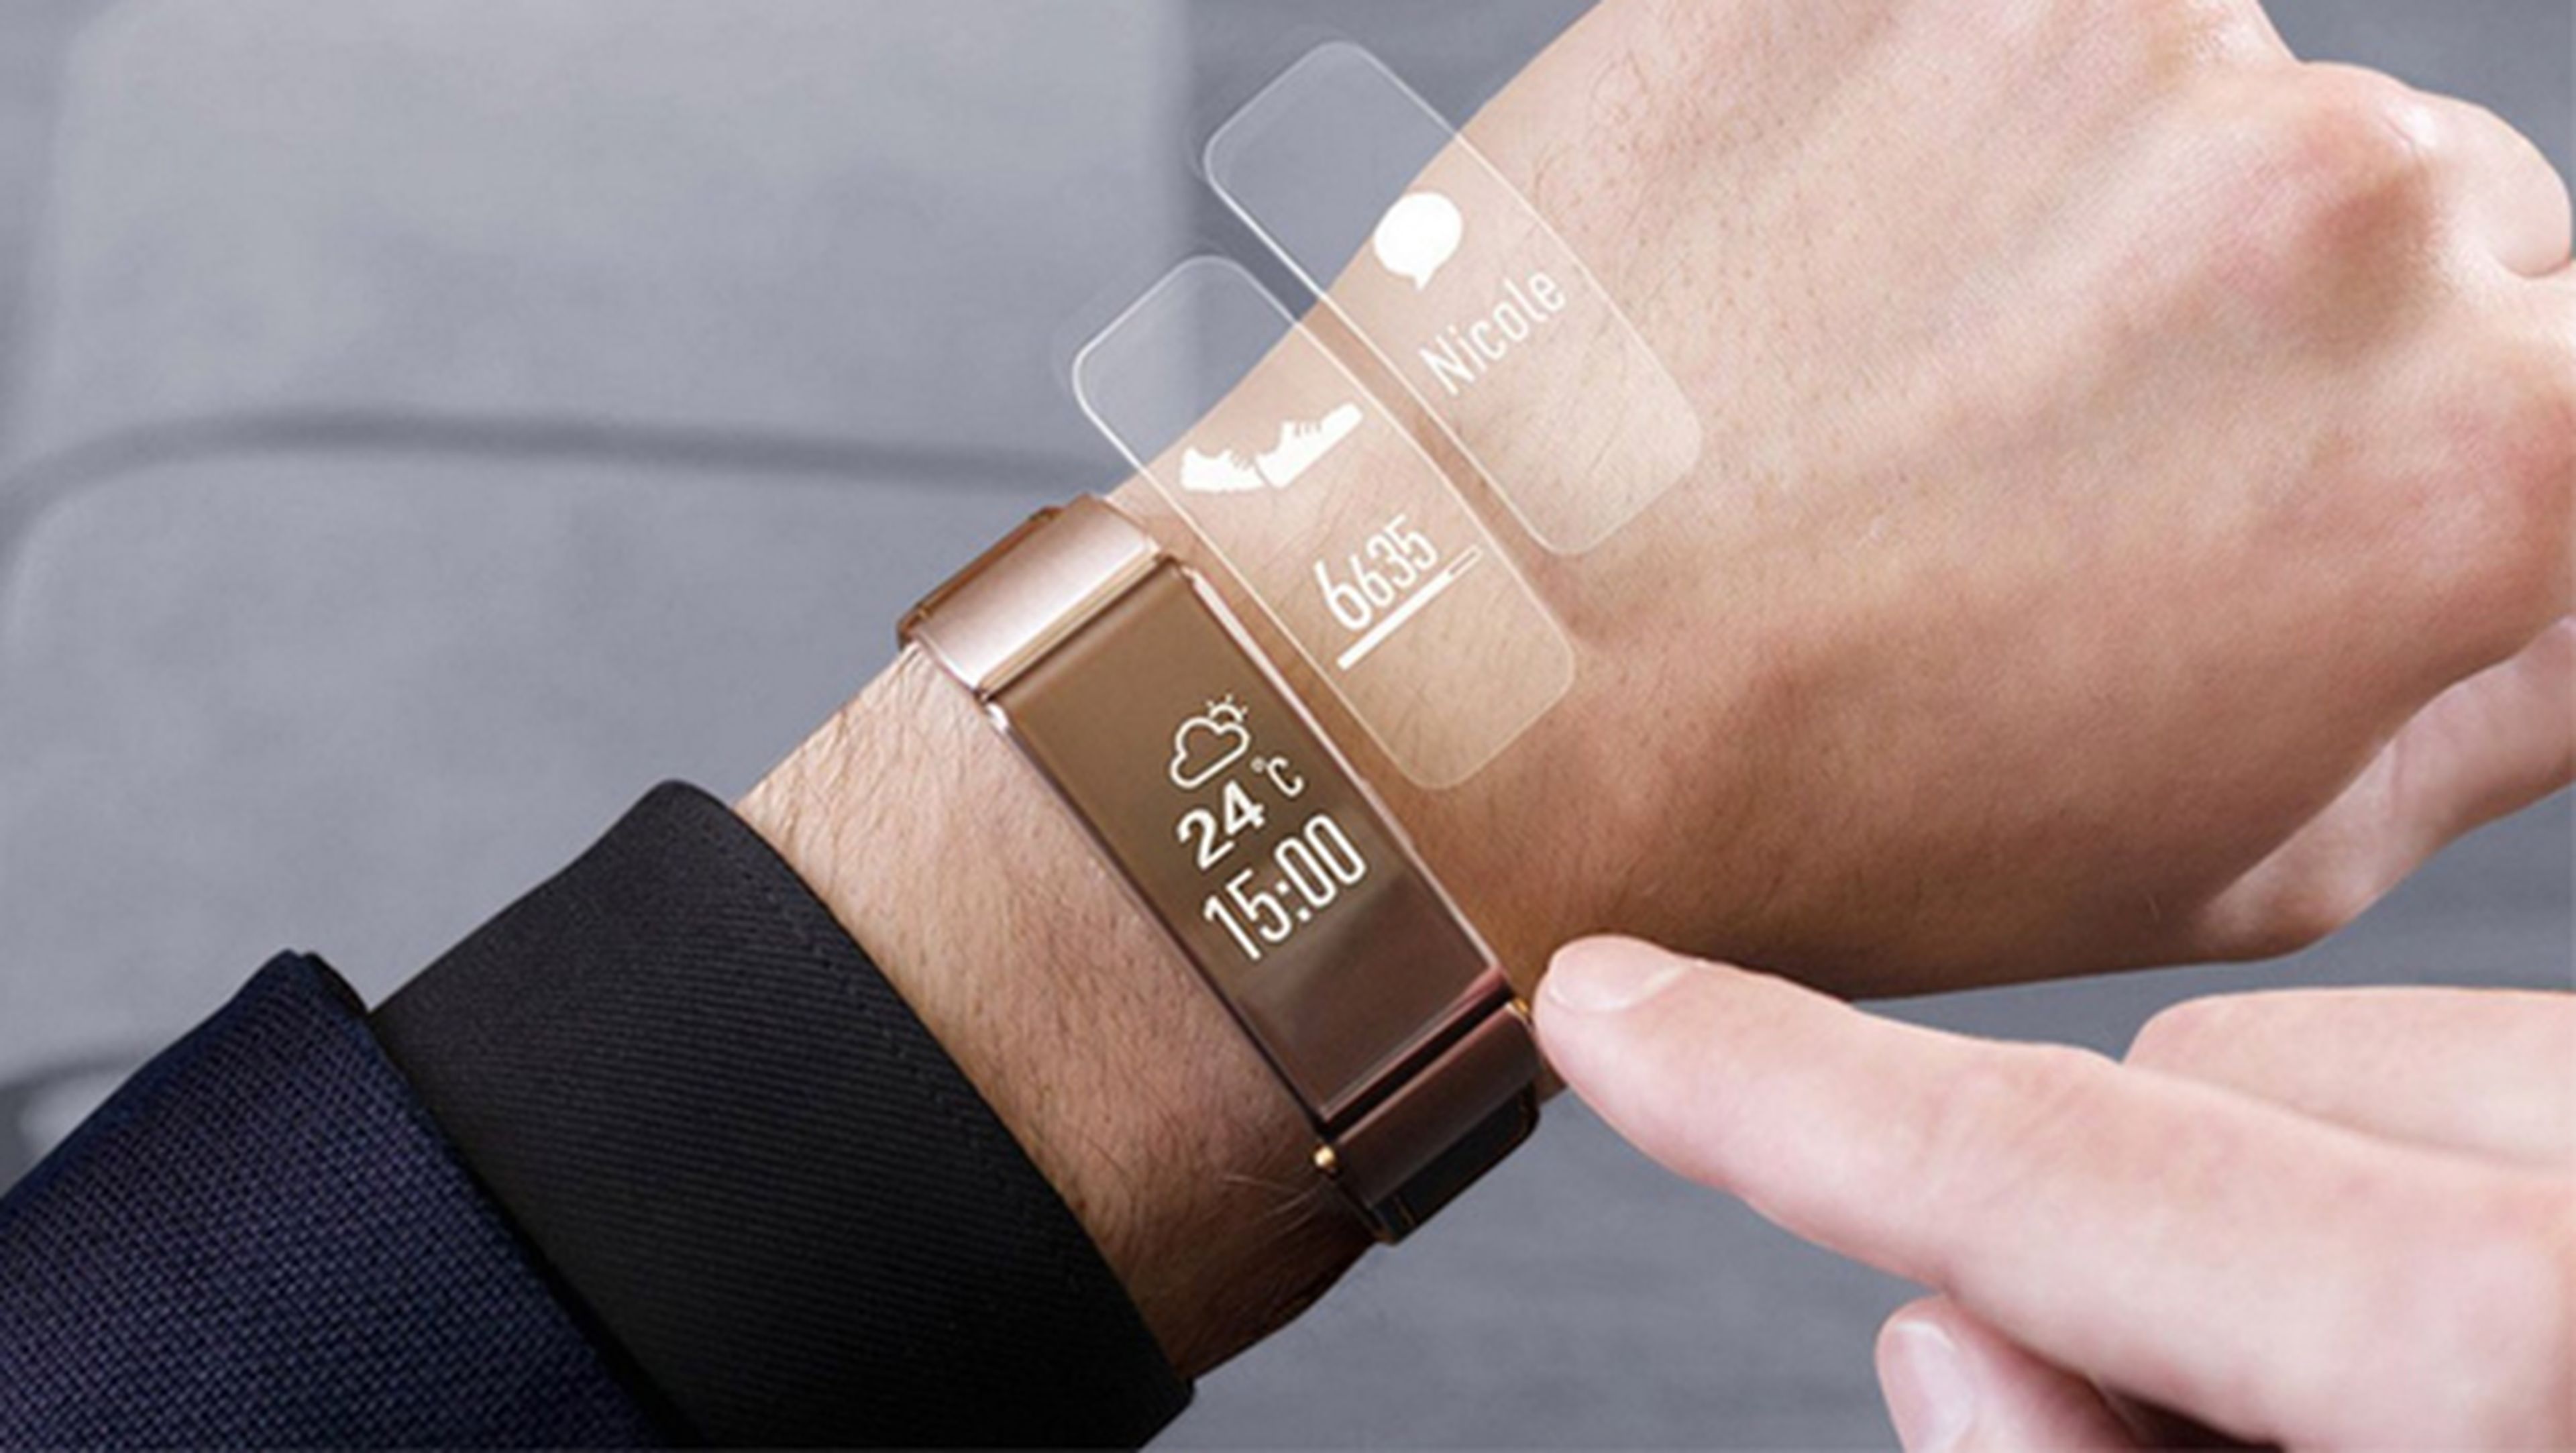 Huawei TalkBand B2 smartband pulsera inteligente 2015